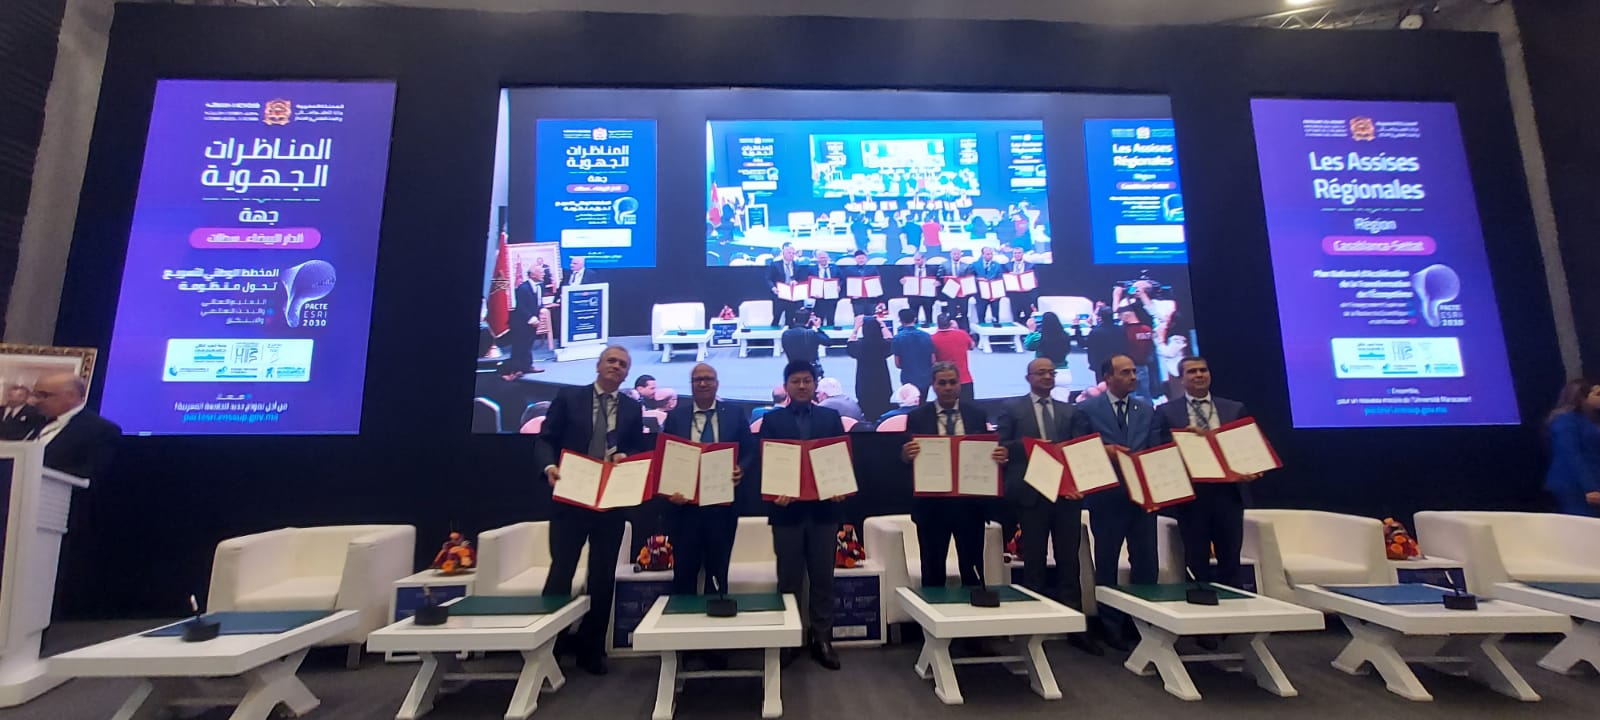 Huawei Maroc signe un MoU avec six universités partenaires de la région Casablanca-Settat